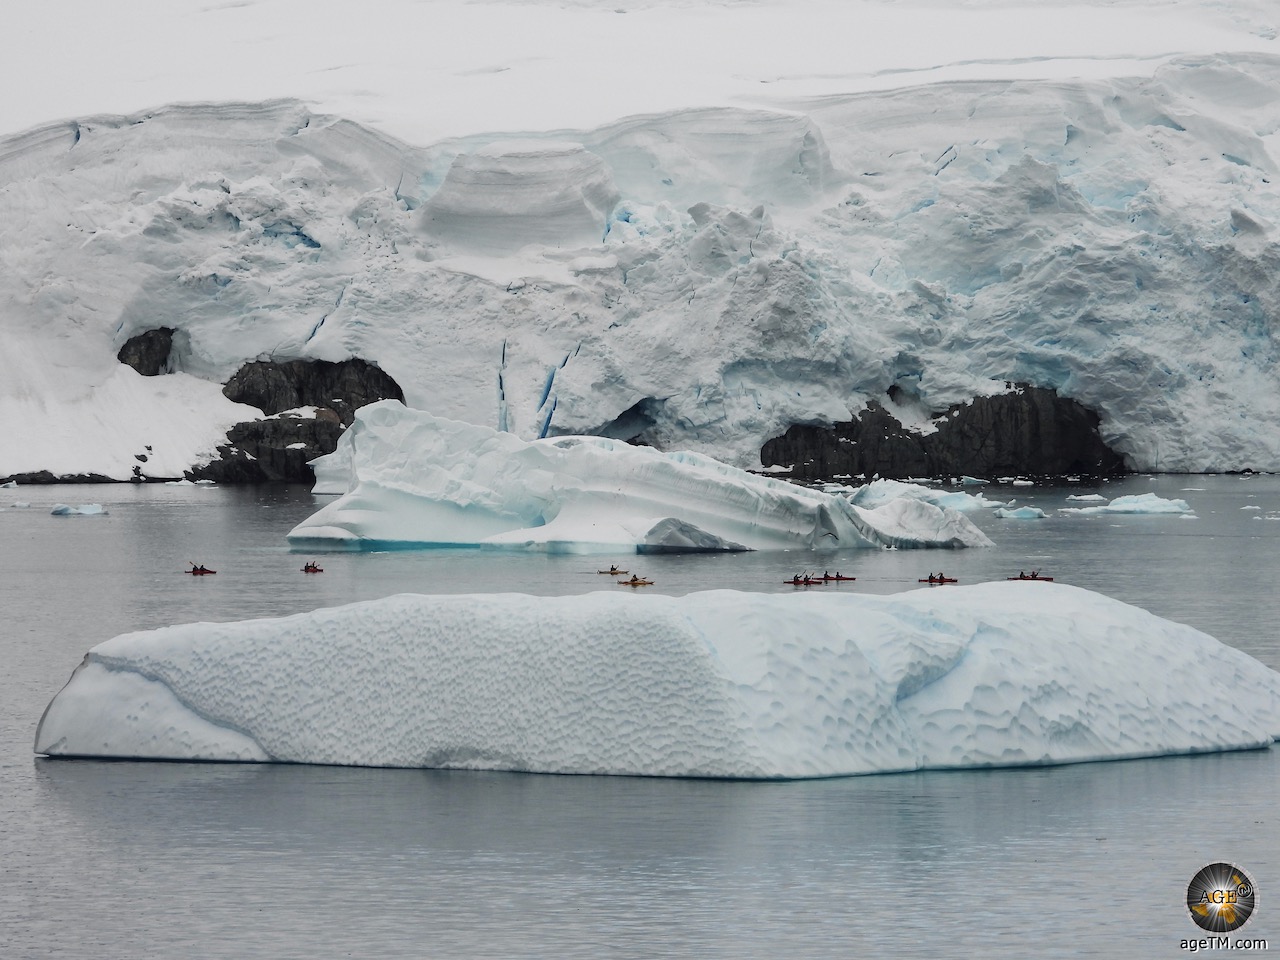 Un grup de caiacistes remegen entre dos icebergs gegants i davant de la costa nevada de Portal Point a la península antàrtica